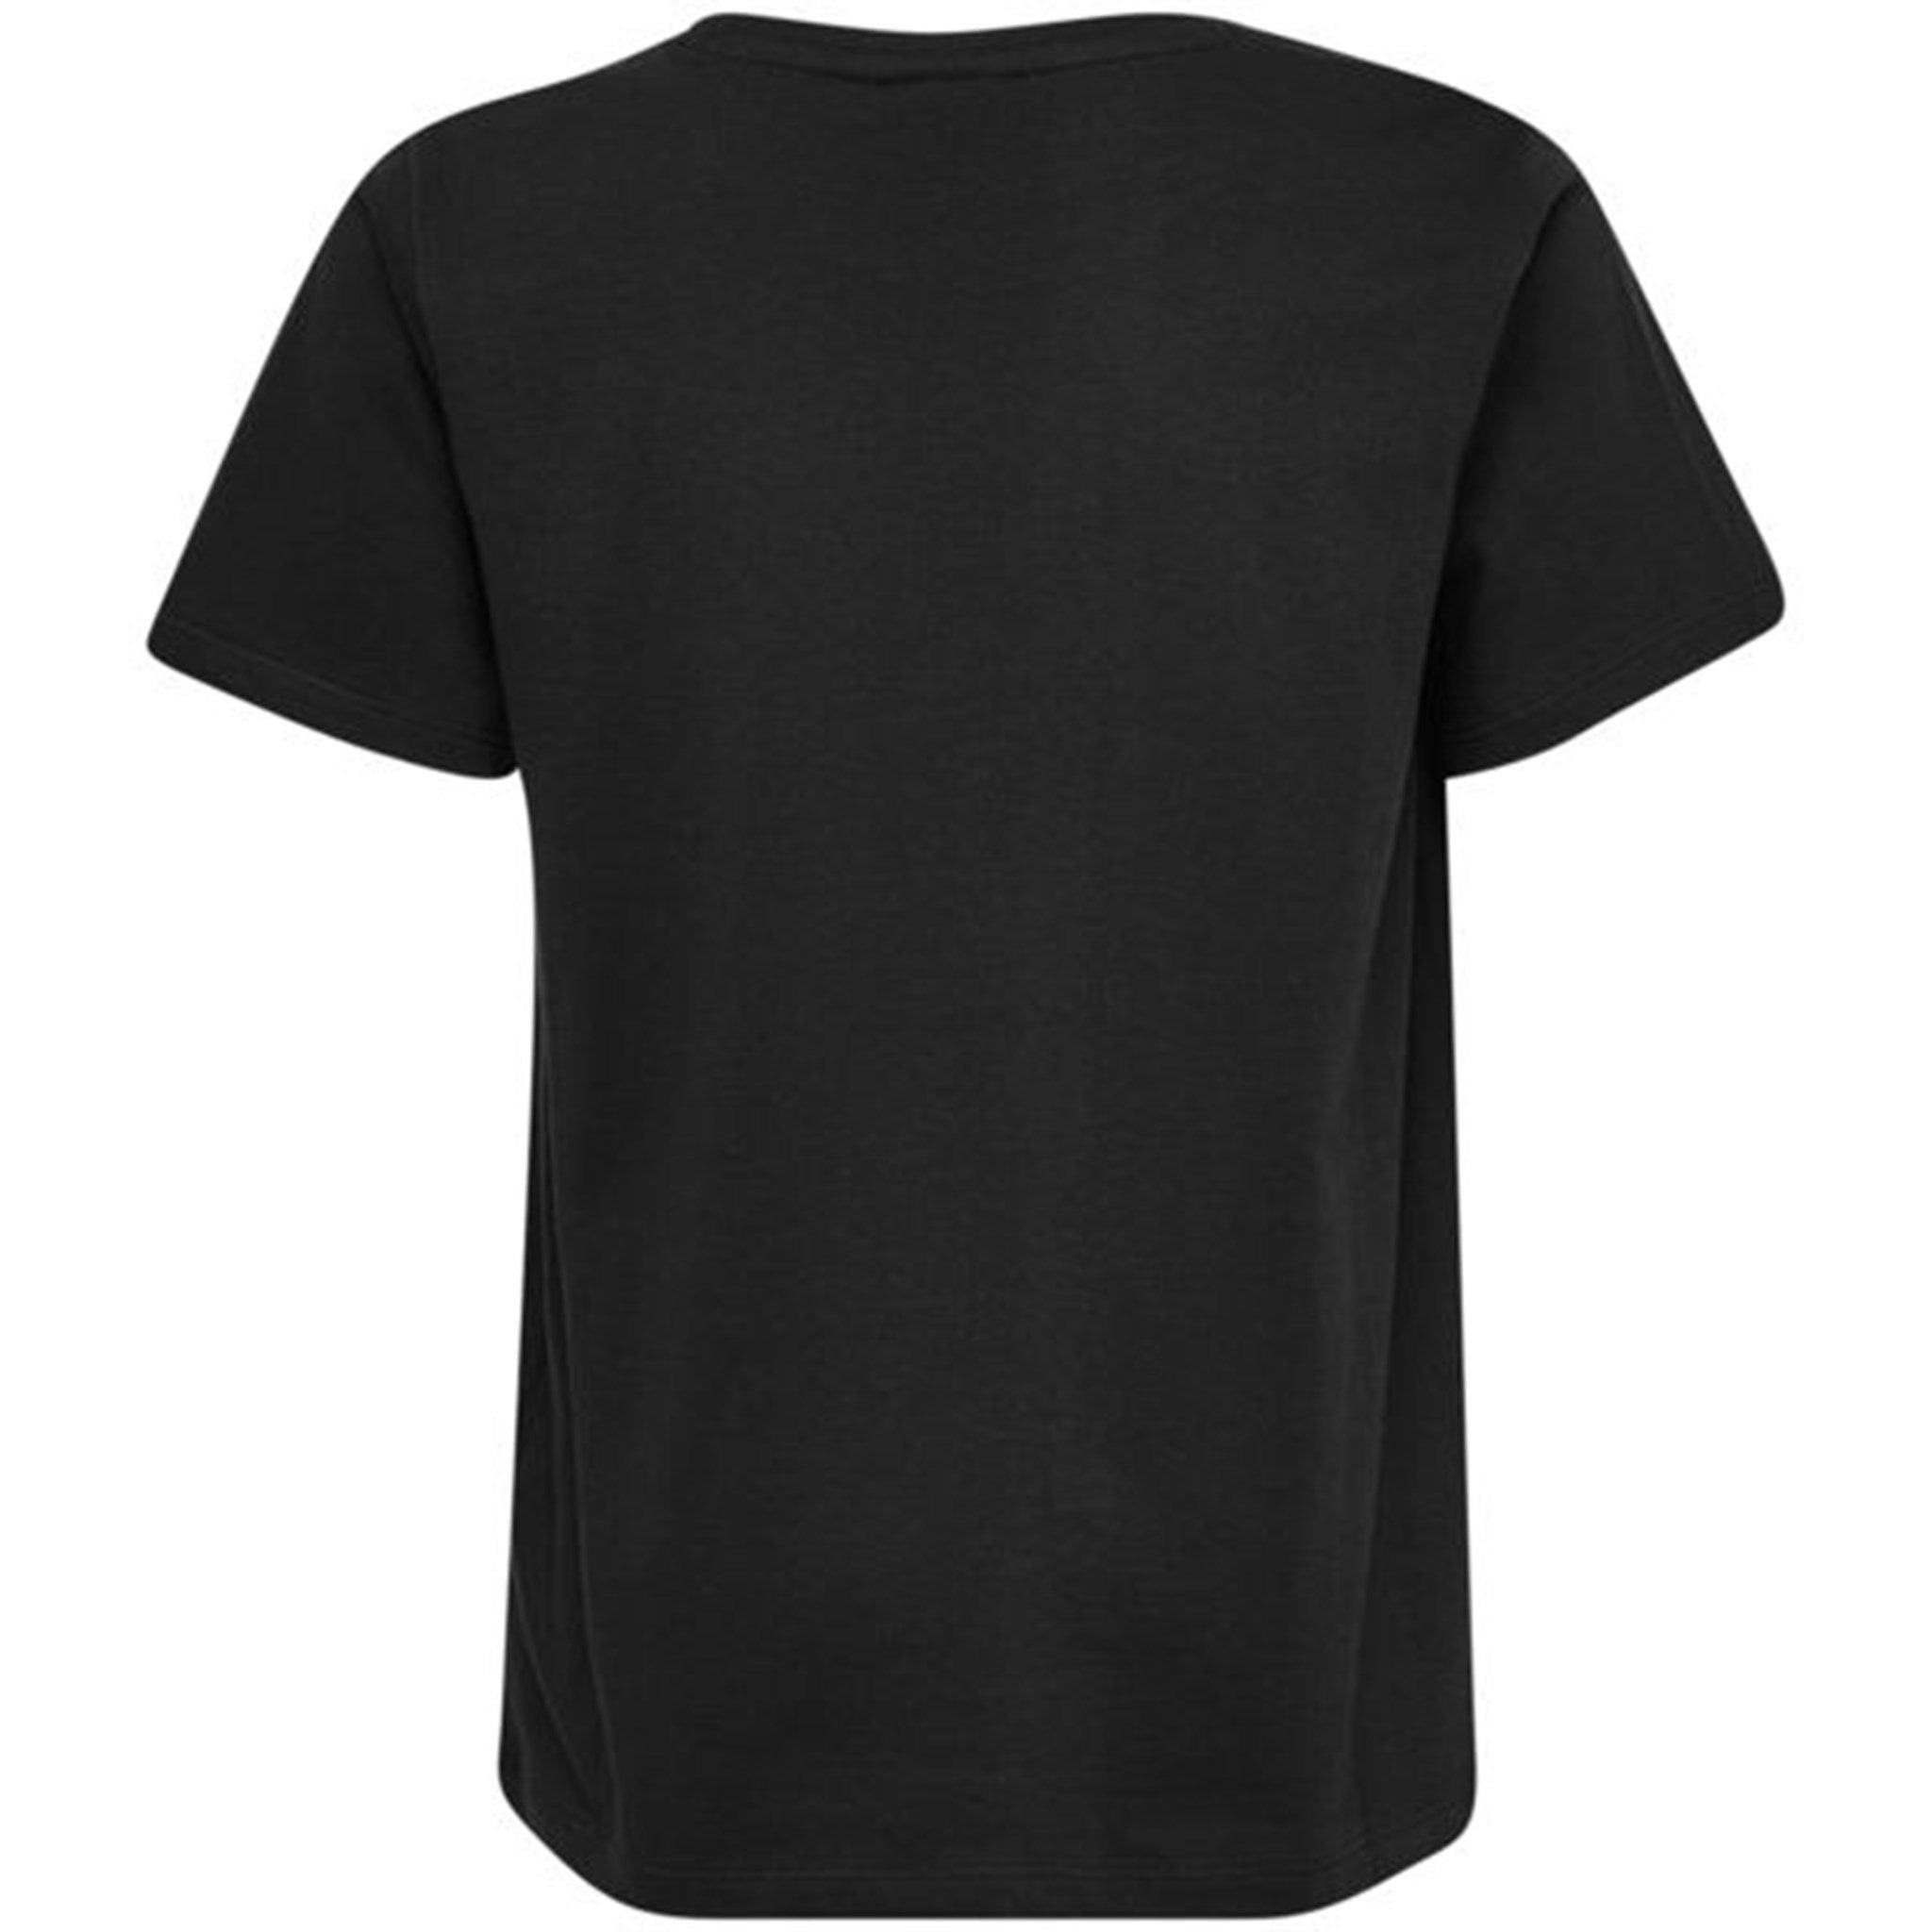 Hummel Black Tres T-Shirt S/S 2